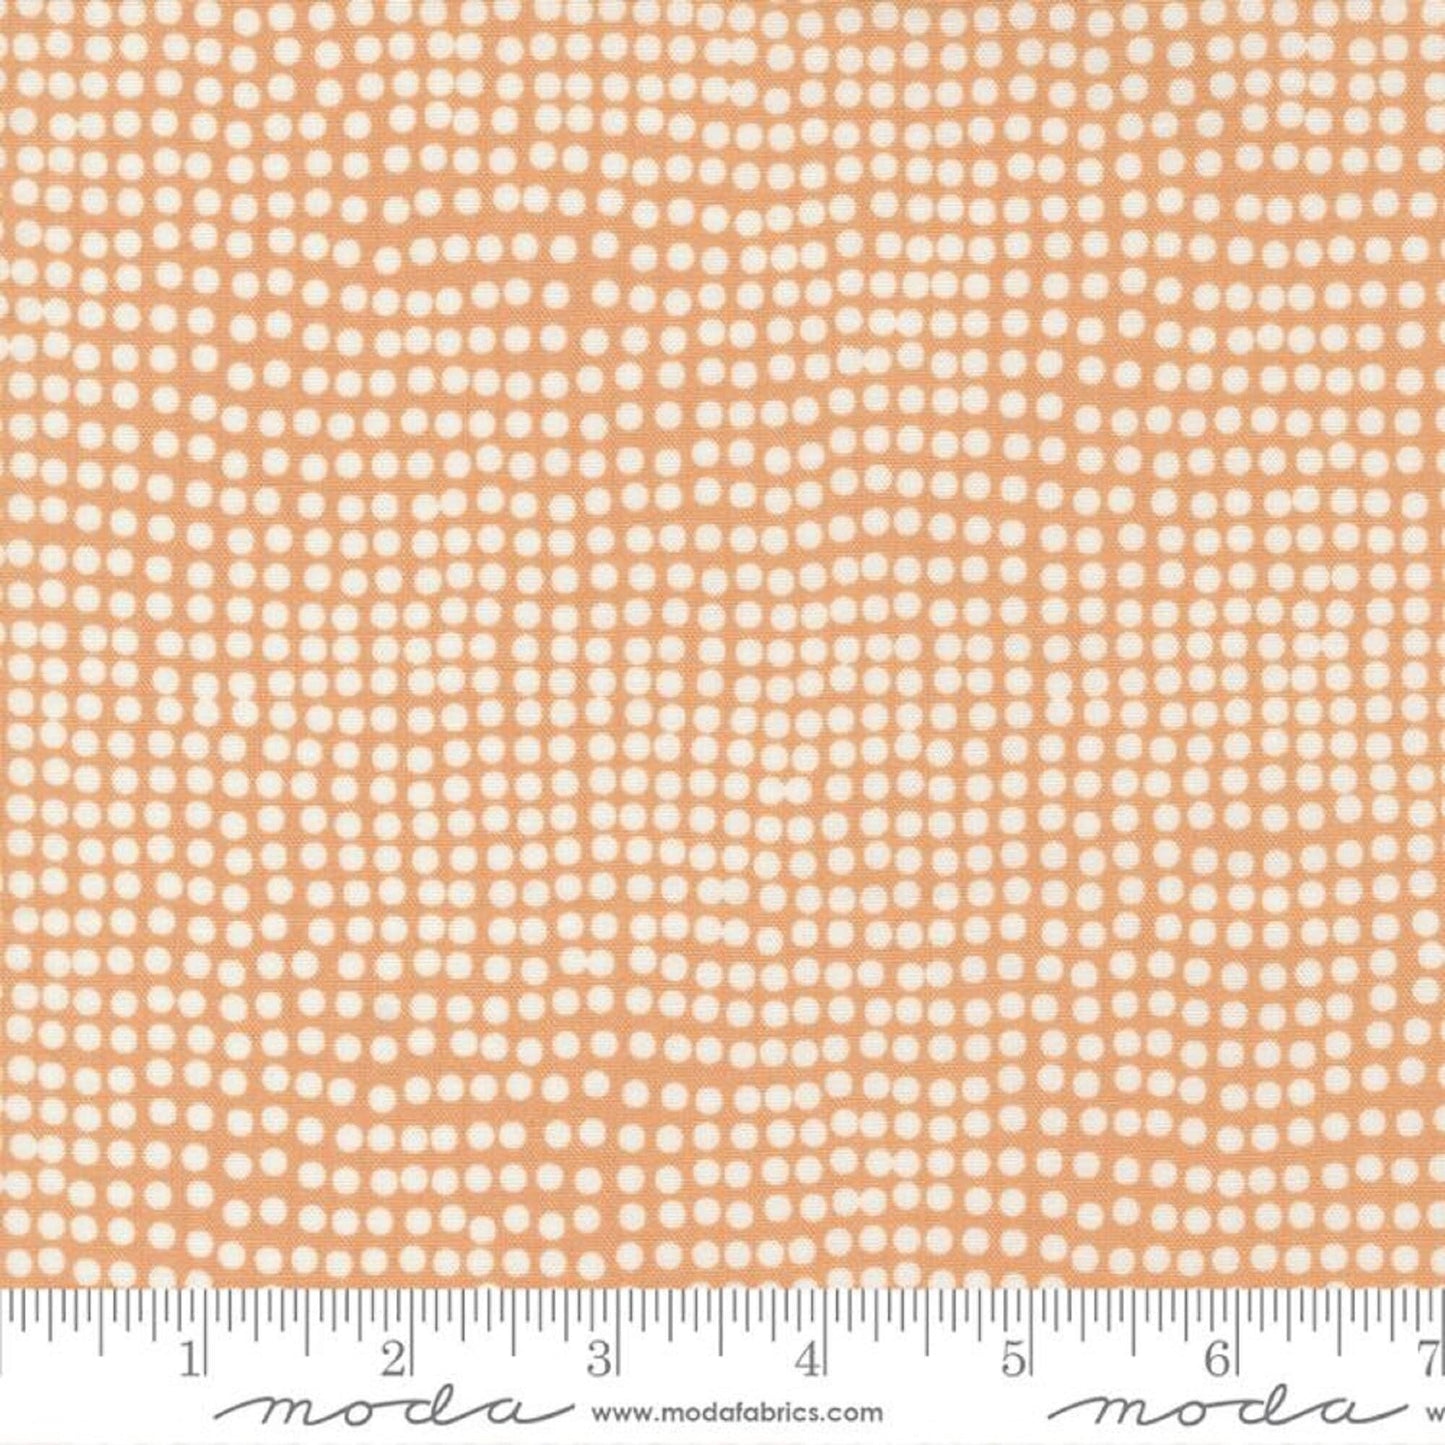 Dots Peachy Frisky Zen Chic Moda Fabric 100% Cotton Quilting Fabric Yardage 1774 20 Fabric Fetish